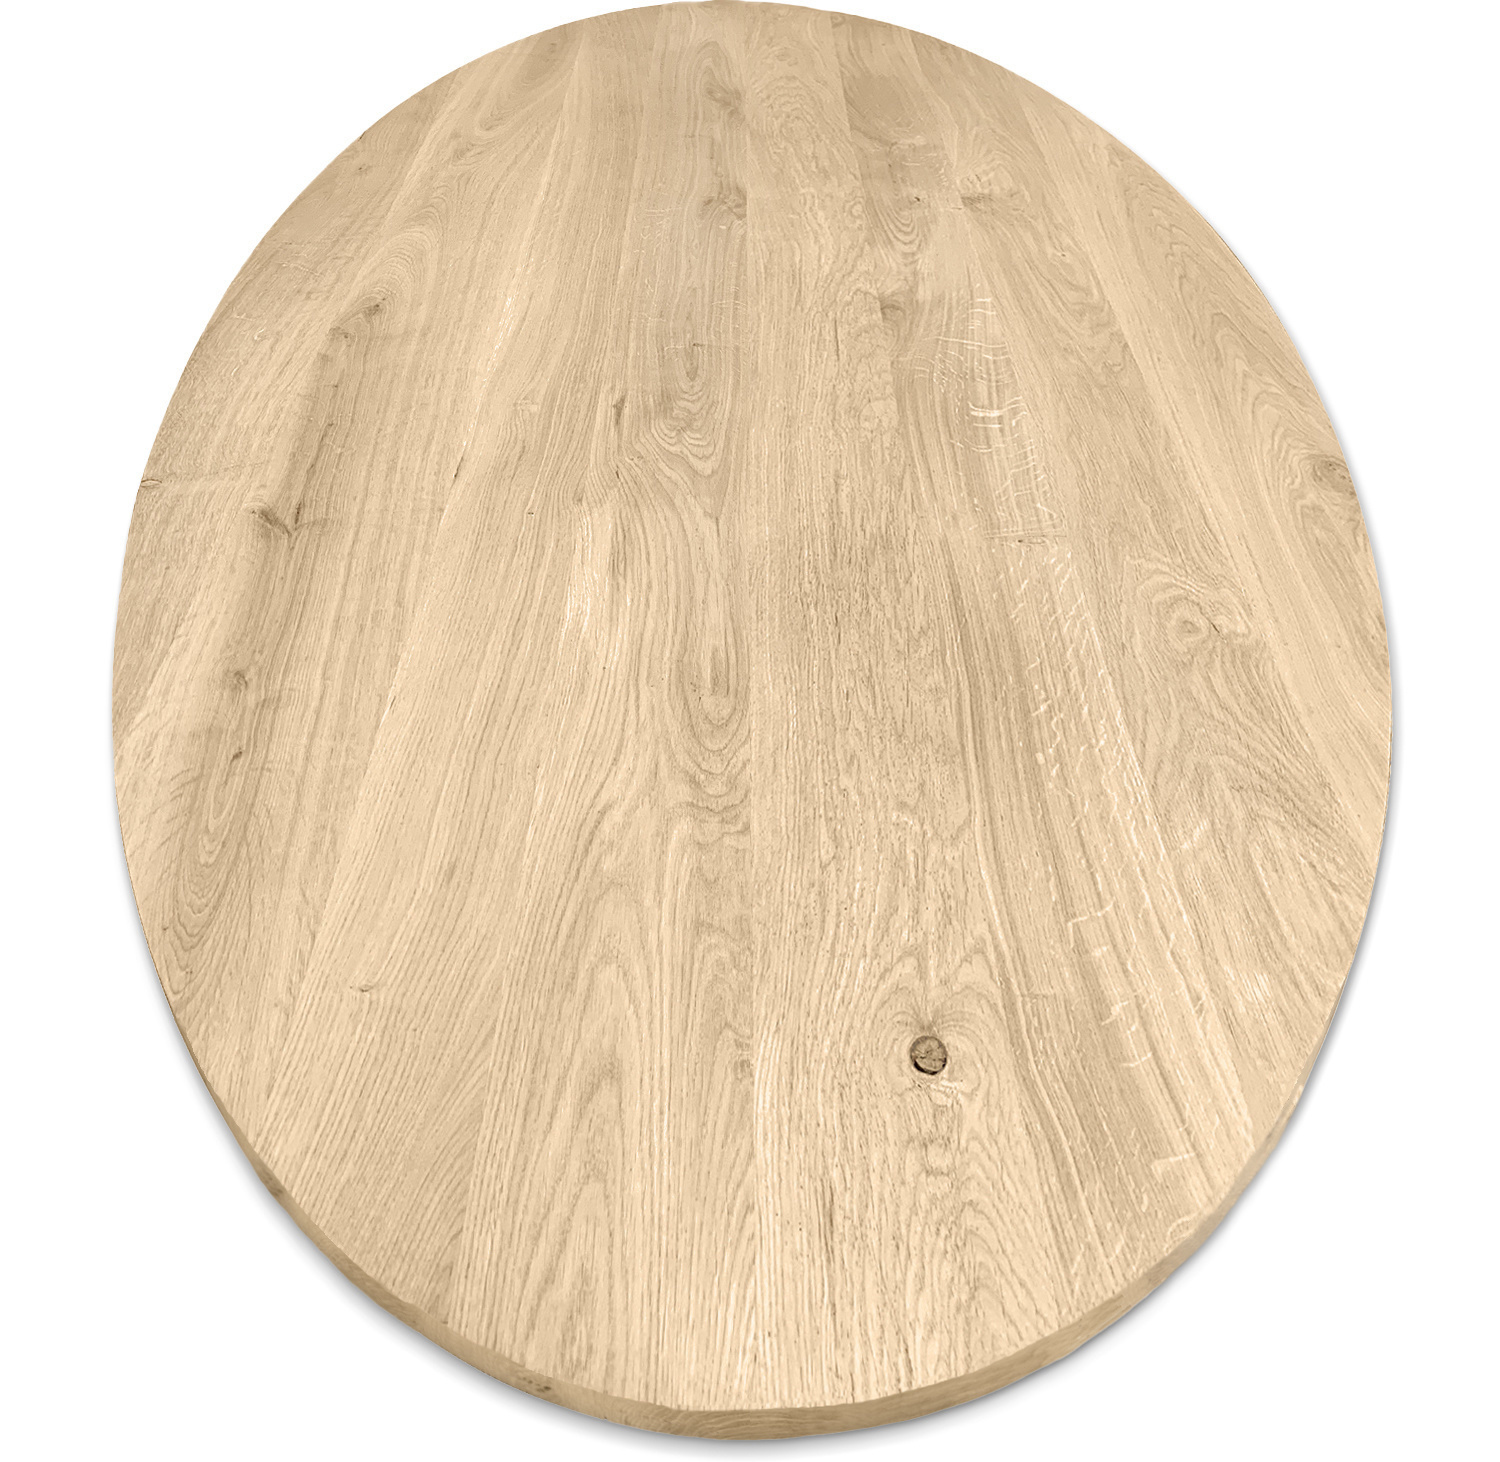  Tischplatte Eiche oval - 4 cm dick (1-Schicht) - Breite Lamellen (10 - 12 cm breit) - Eichenholz rustikal - Tischplatte ovale / ellipse Eiche - verleimt & künstlich getrocknet (HF 8-12%) - verschiedene Größen